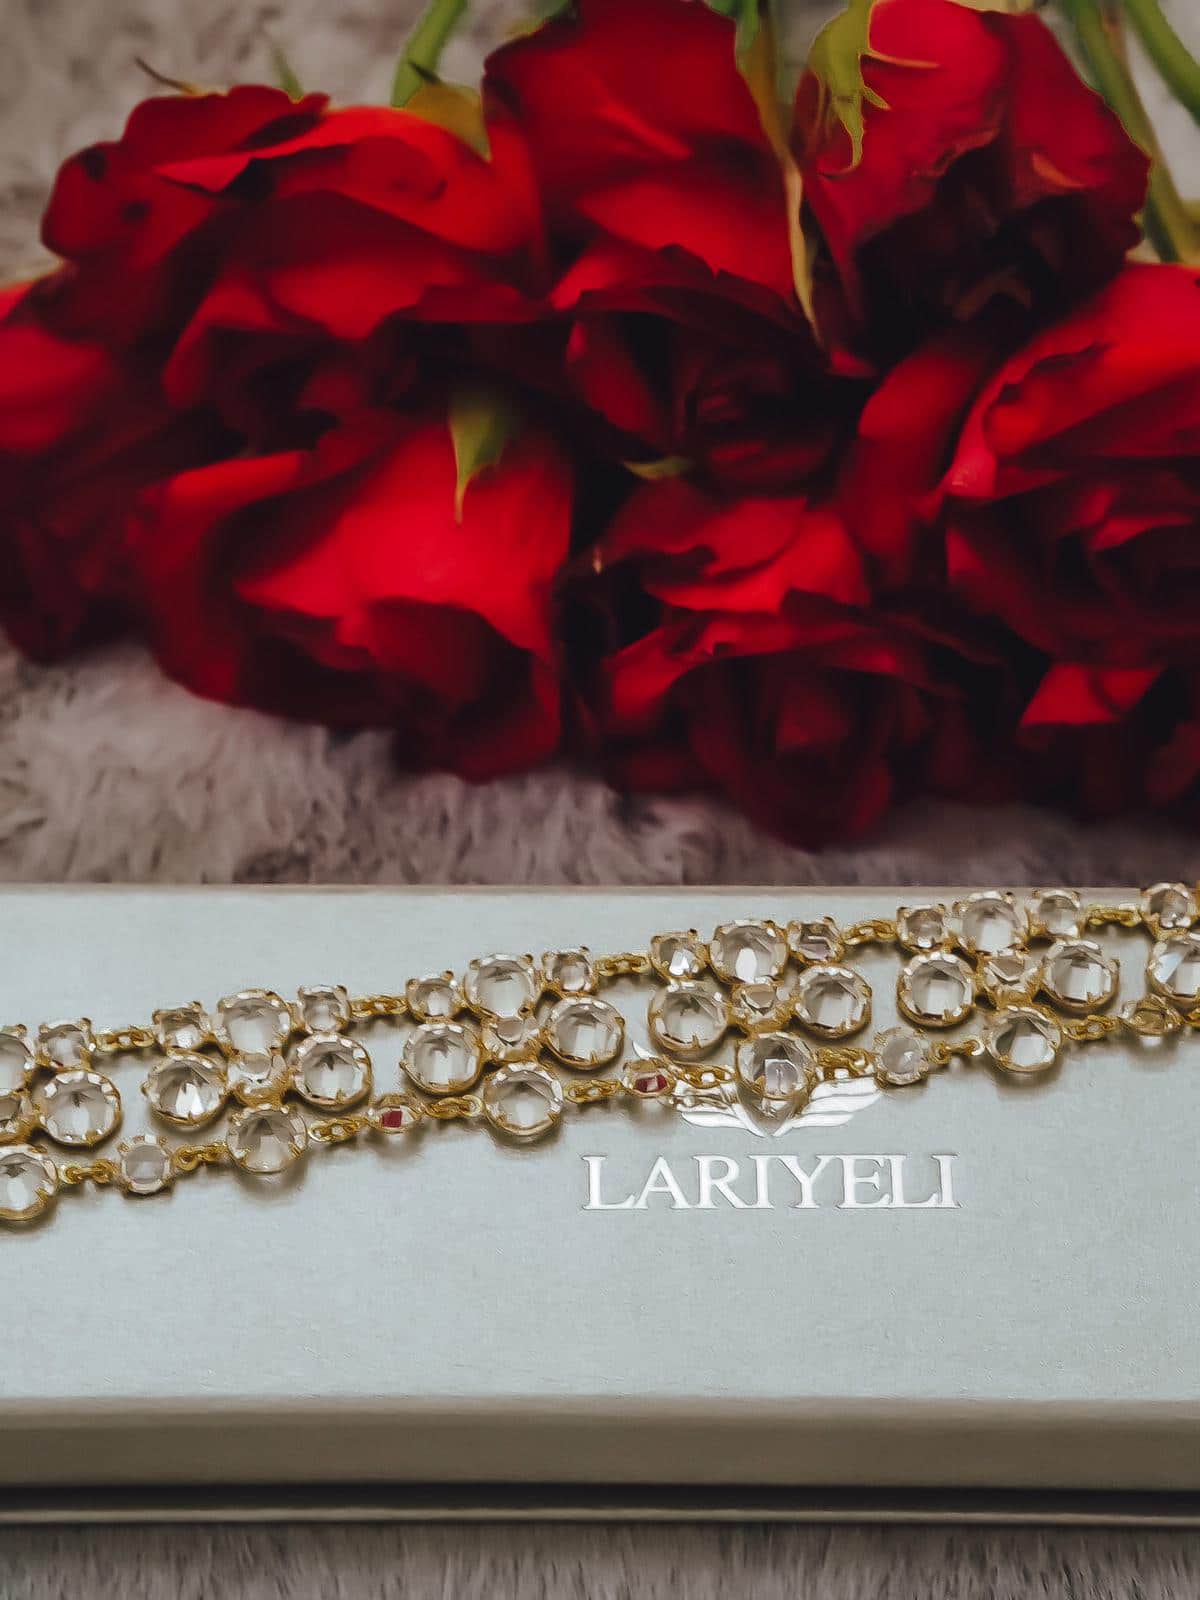 Lariyeli ist eine vegane Marke für luxuriösen Schmuck & Accessoires. Ich zeige das in Handarbeit gefertigte top Crystal Choker Armband auf dem Fashion Blog.